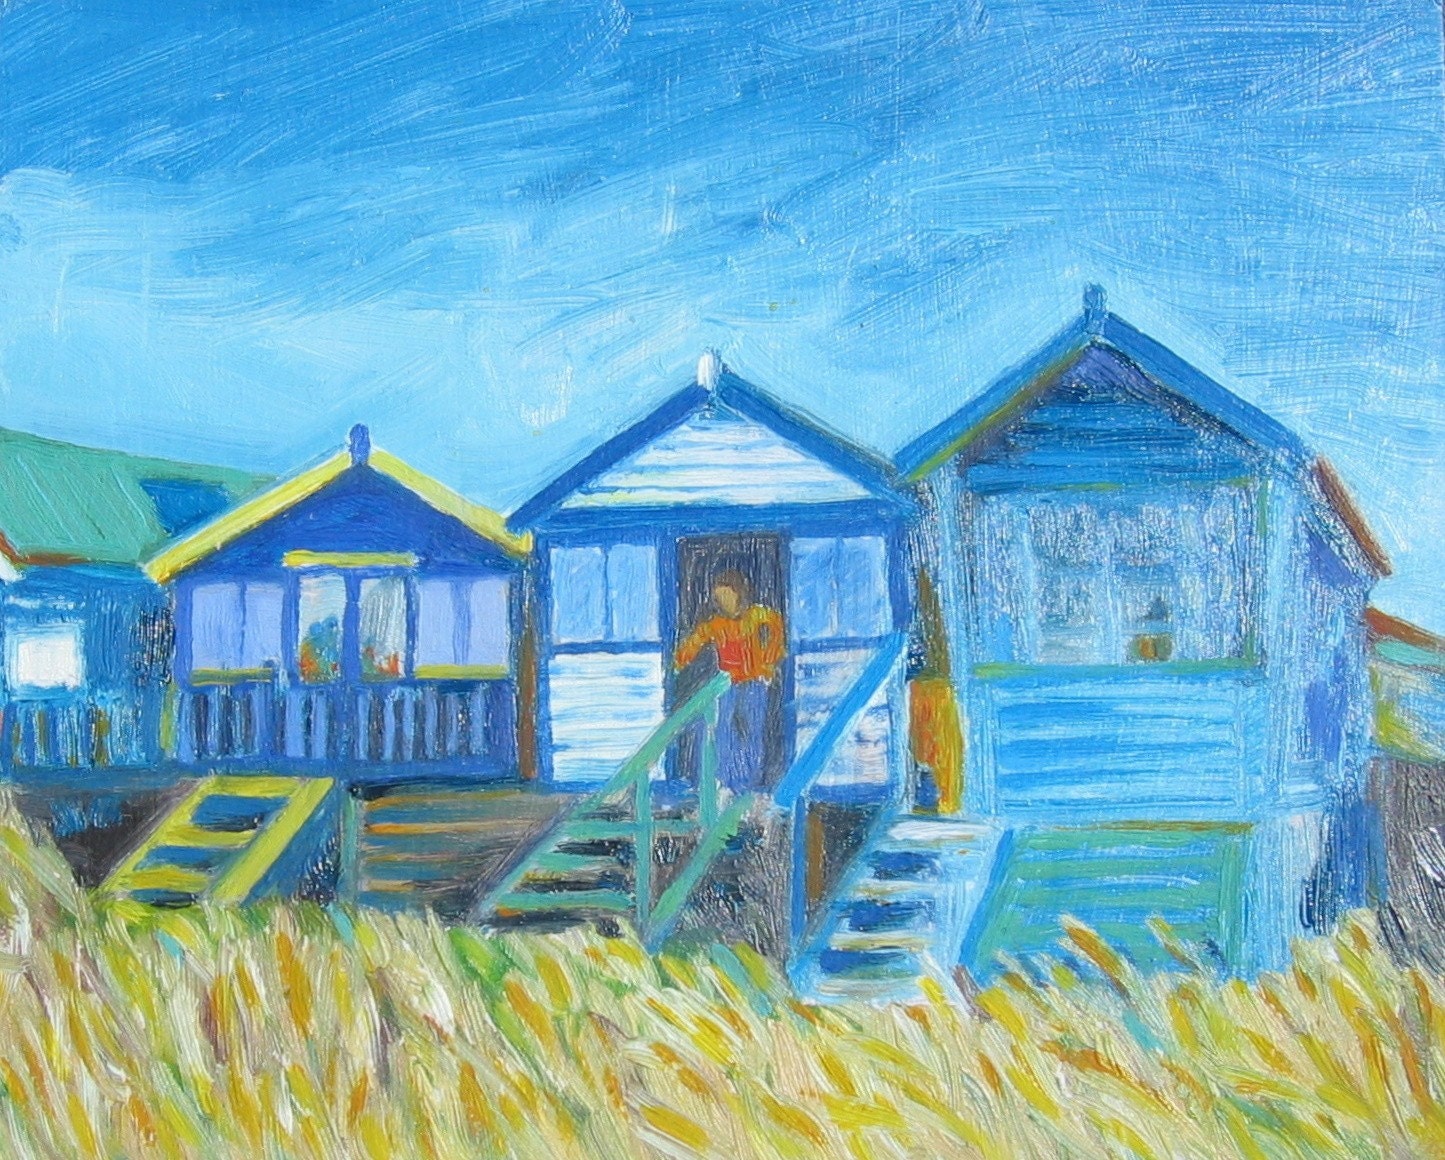 Blue Beach Huts